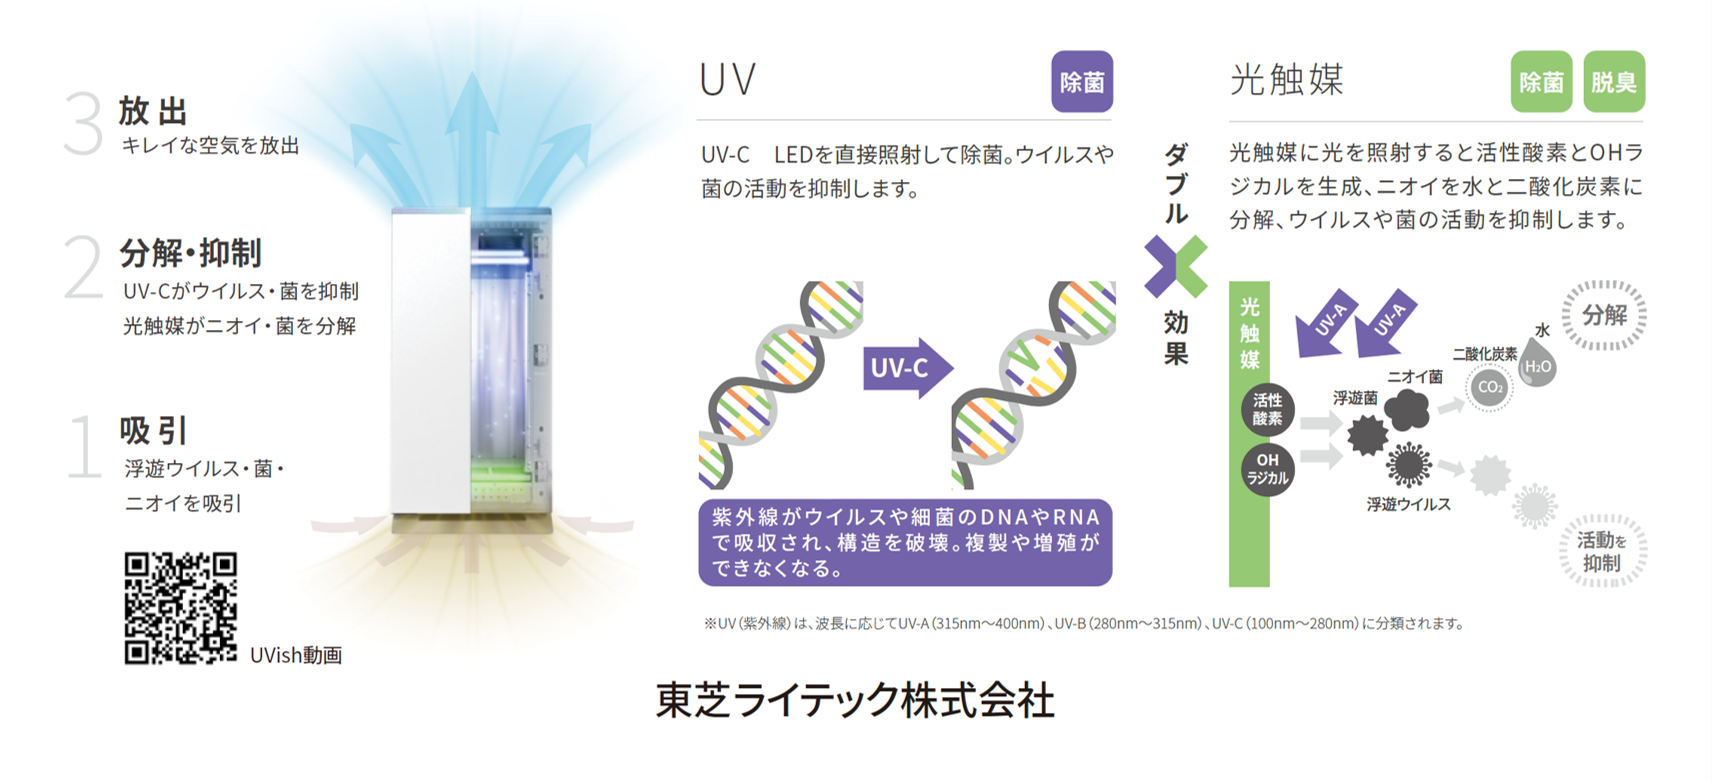 ウイルス抑制・除菌脱臭用UV-LED光触媒装置 UVish 東芝ライテック